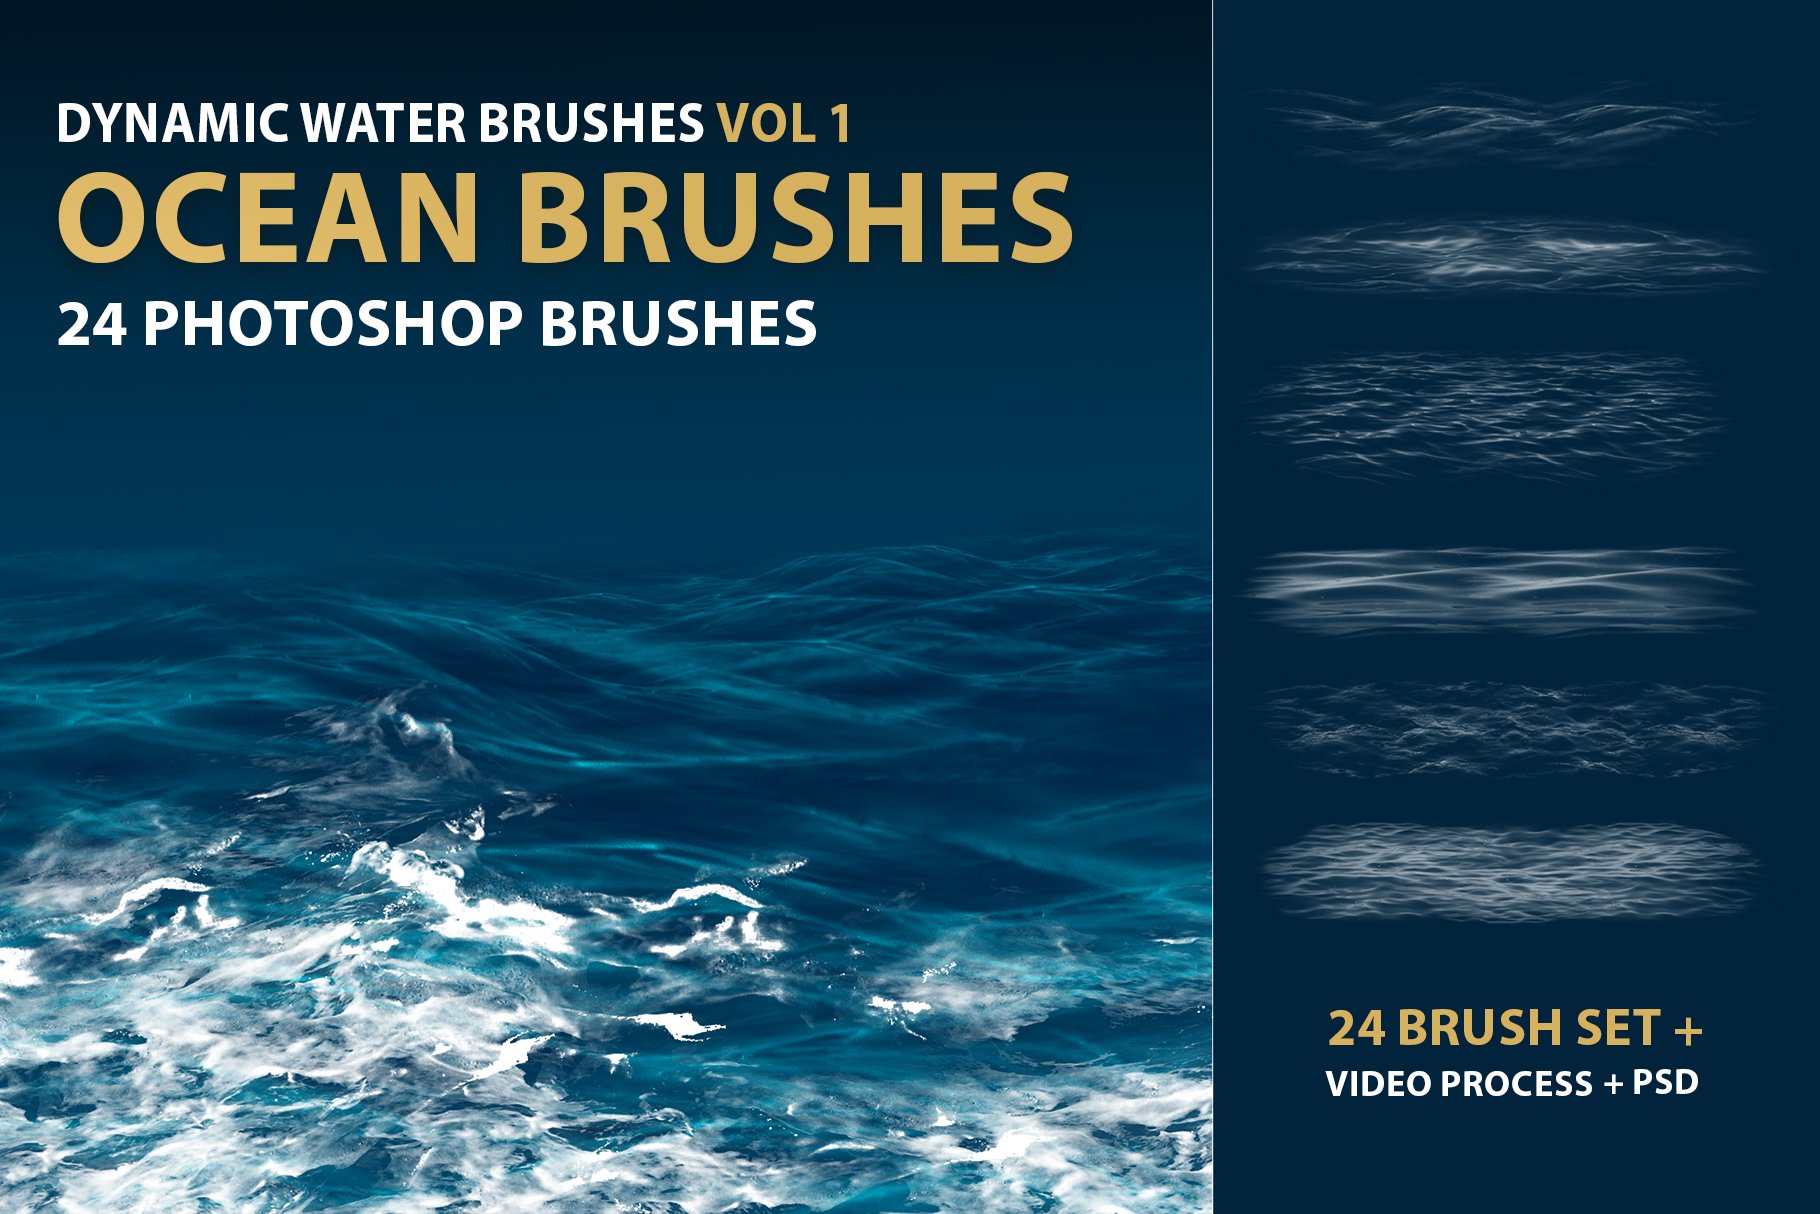 Dynamic Ocean Photoshop Brushescover image.